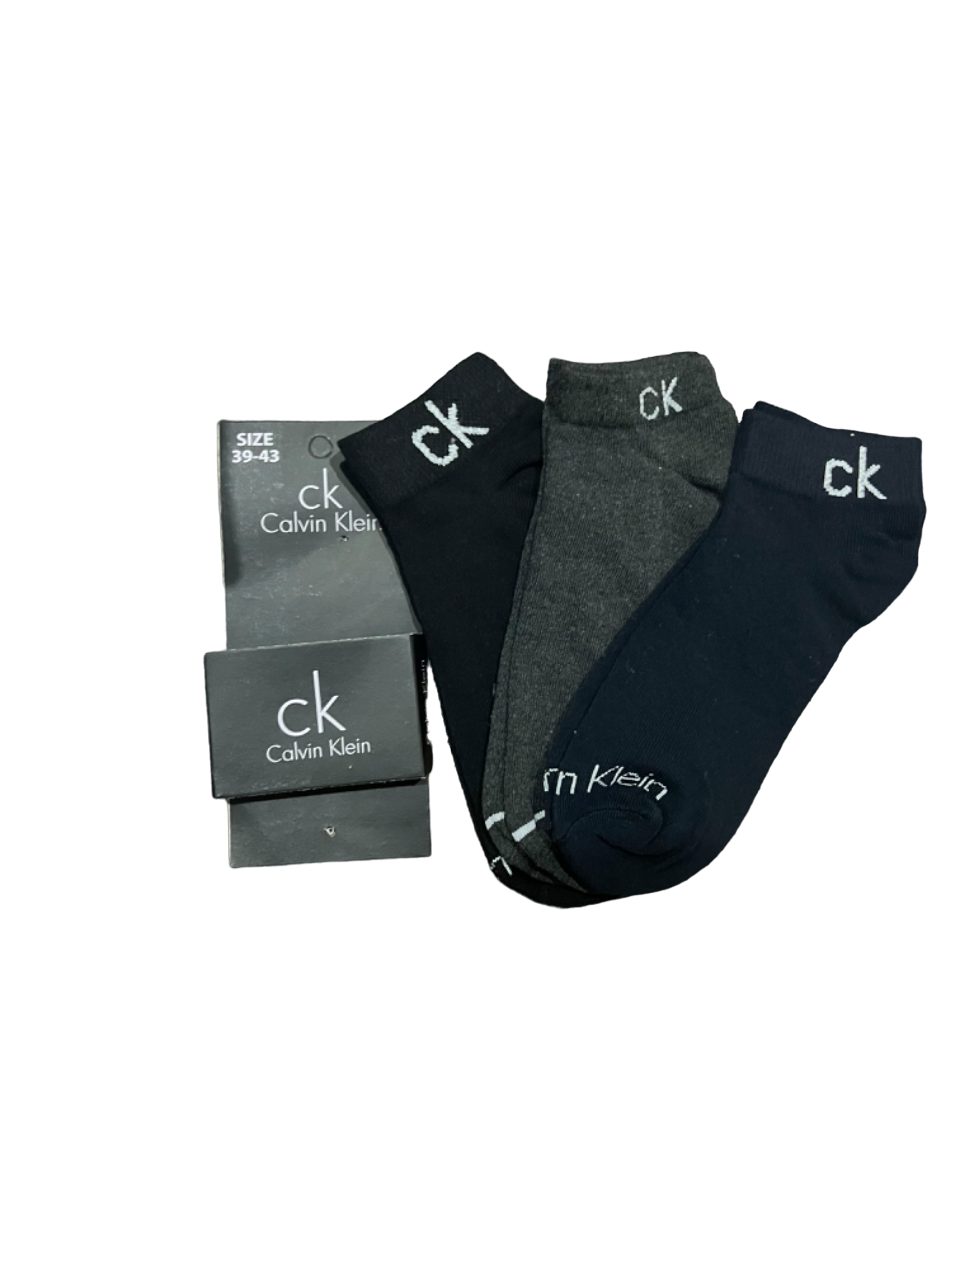 TMS Branded C-K Ankle Socks 25 (Pack Of 3)